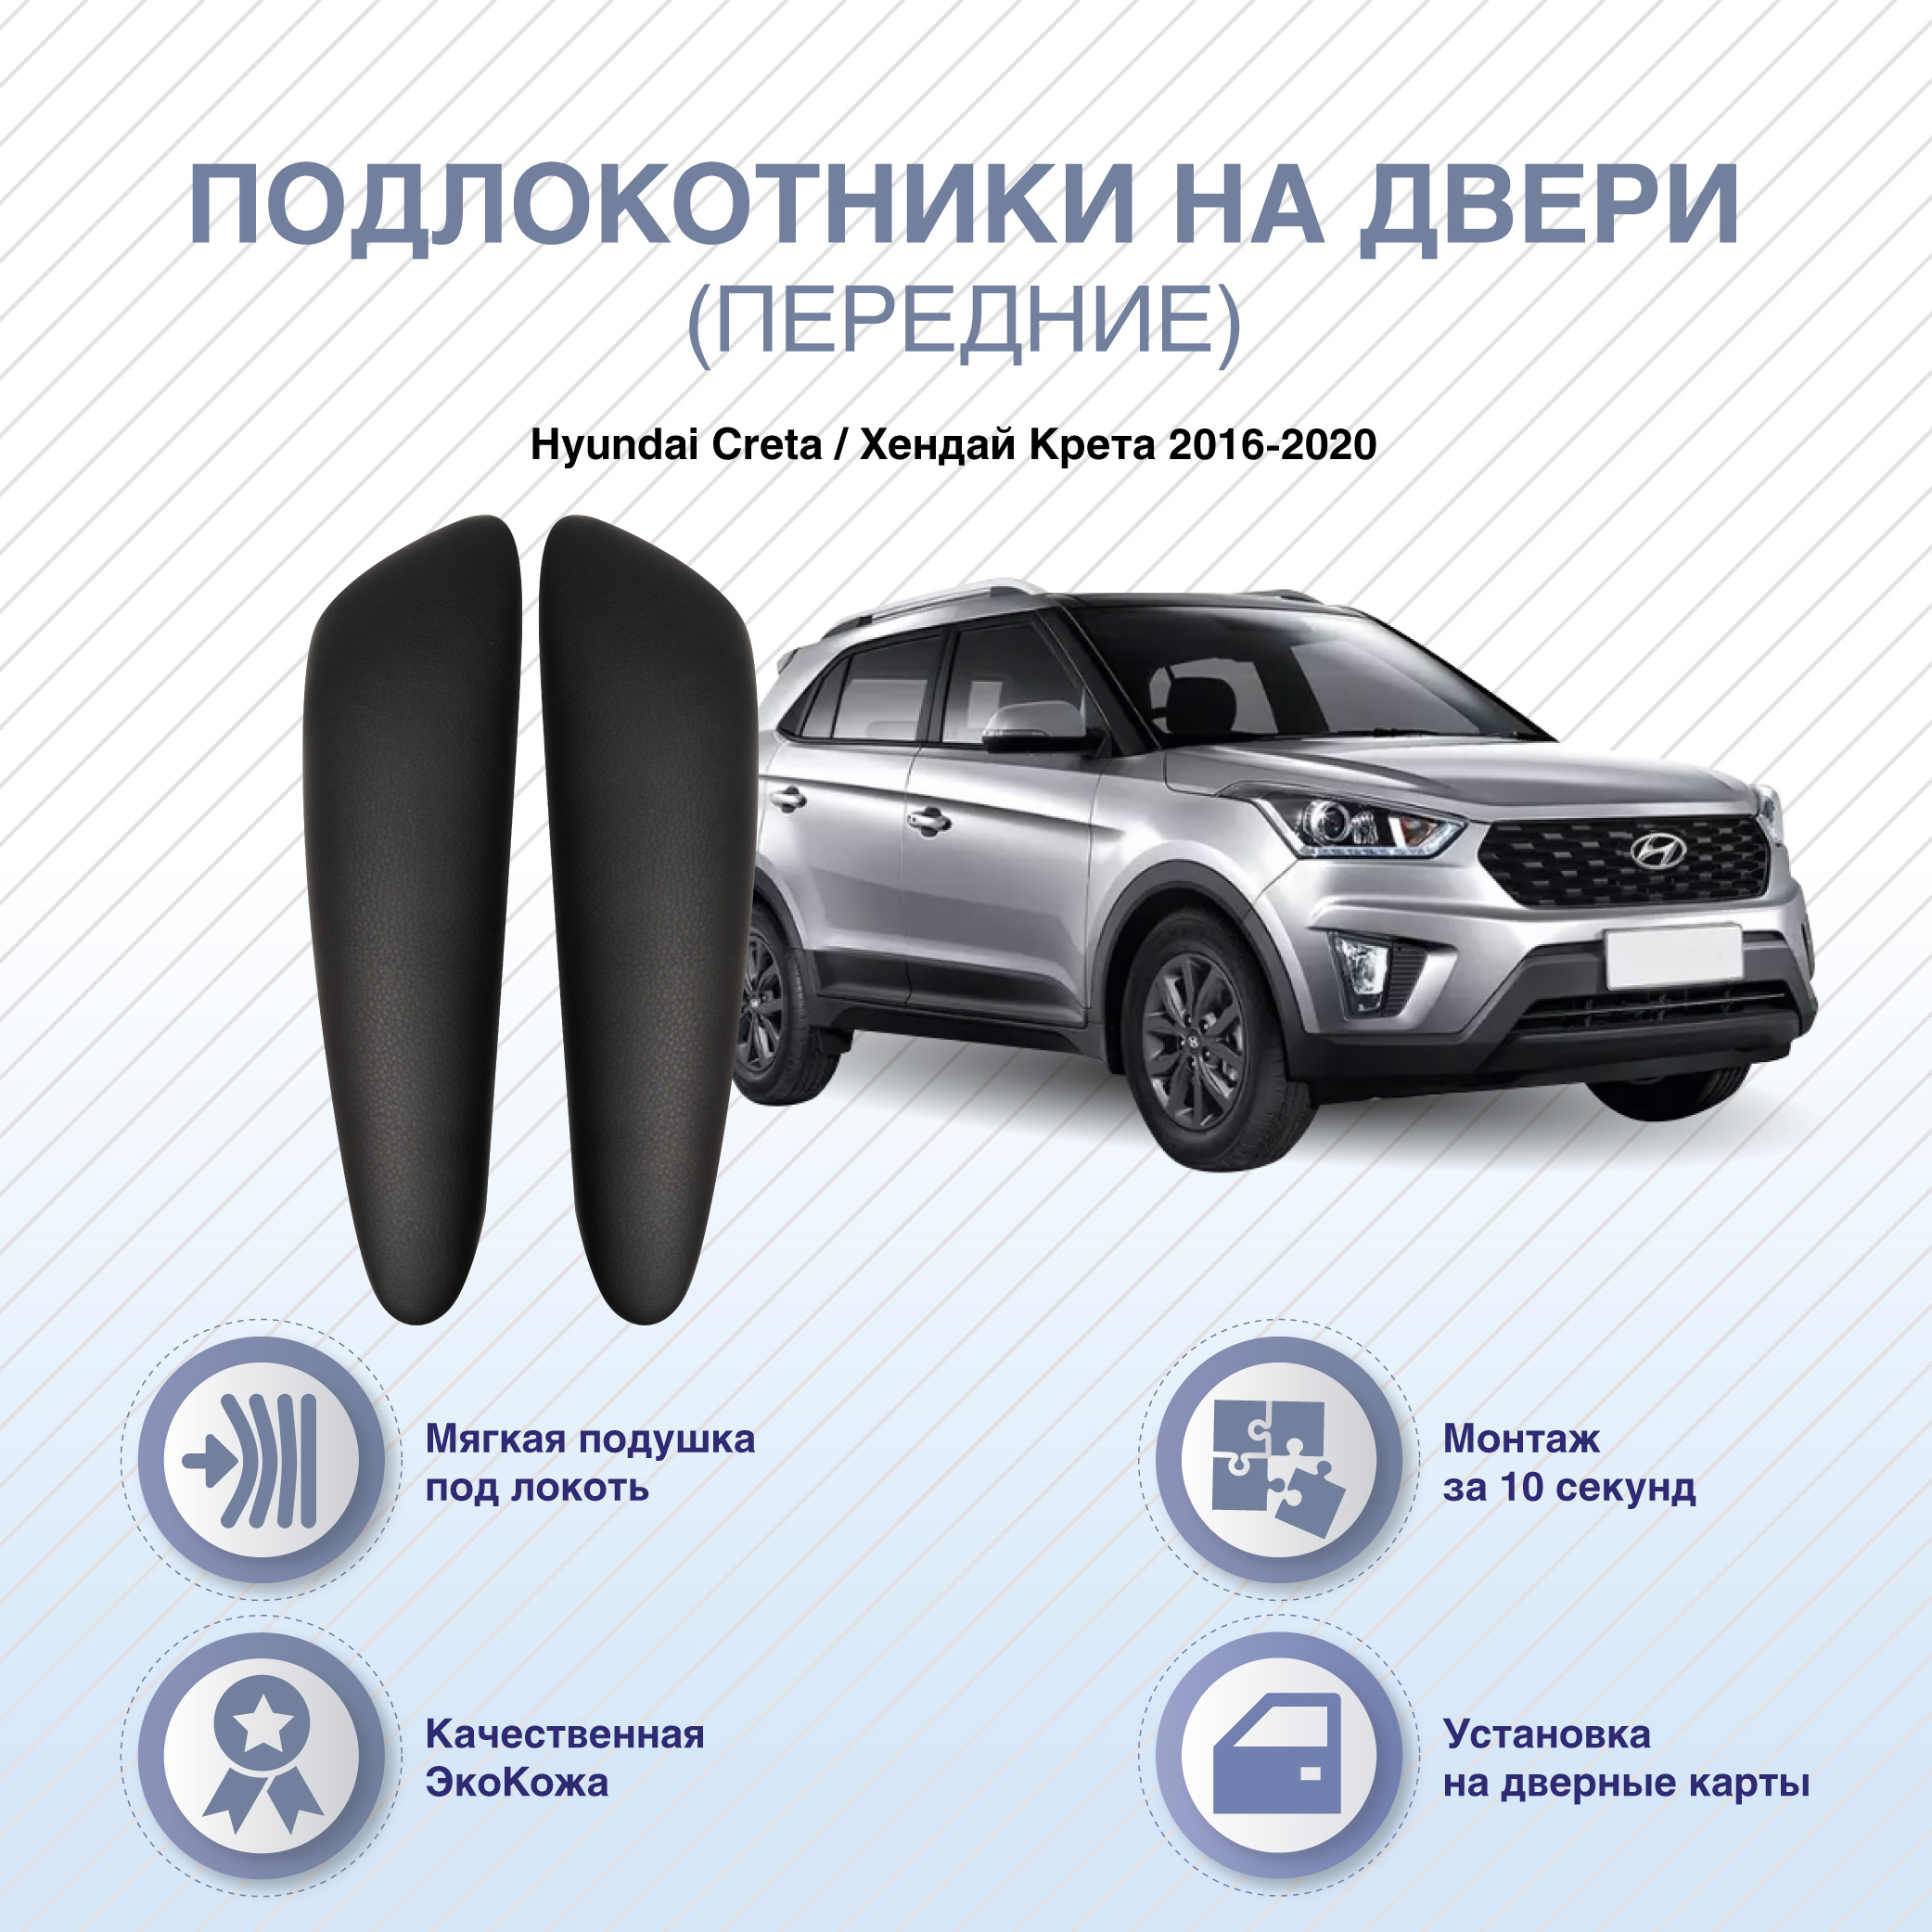 Автомобильные подлокотники ArmAuto на двери Hyundai Creta 2016-2020 / передние 2шт